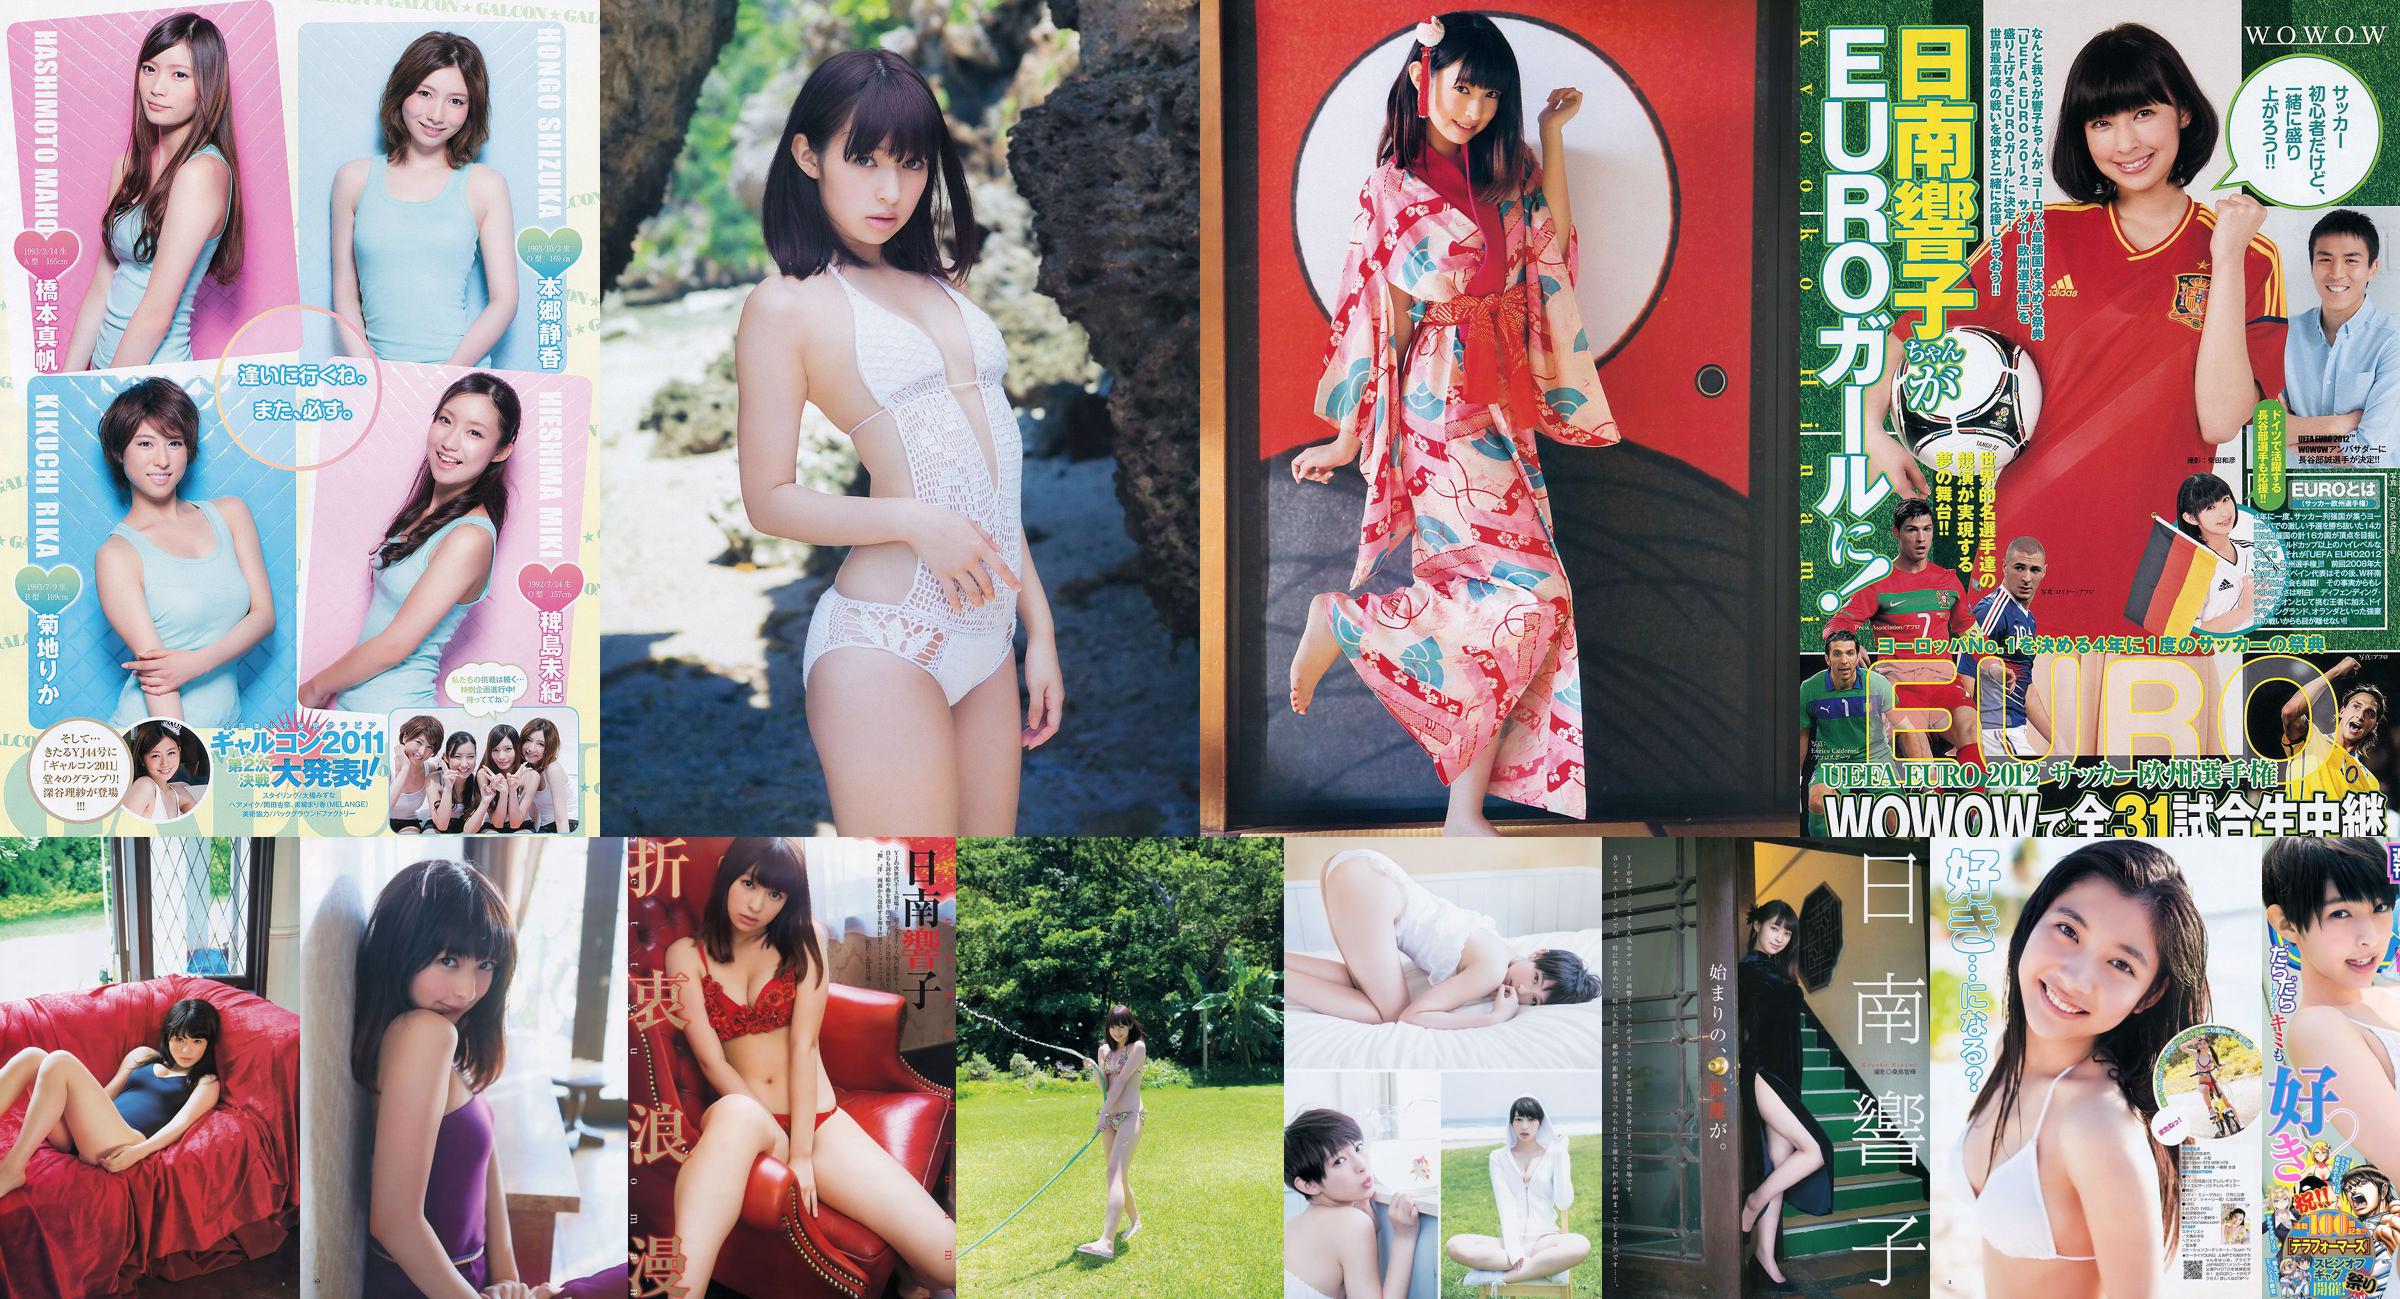 Nichinan Kyouko Nito Misaki [Weekly Young Jump] Tạp chí ảnh số 08 năm 2012 No.a80667 Trang 2